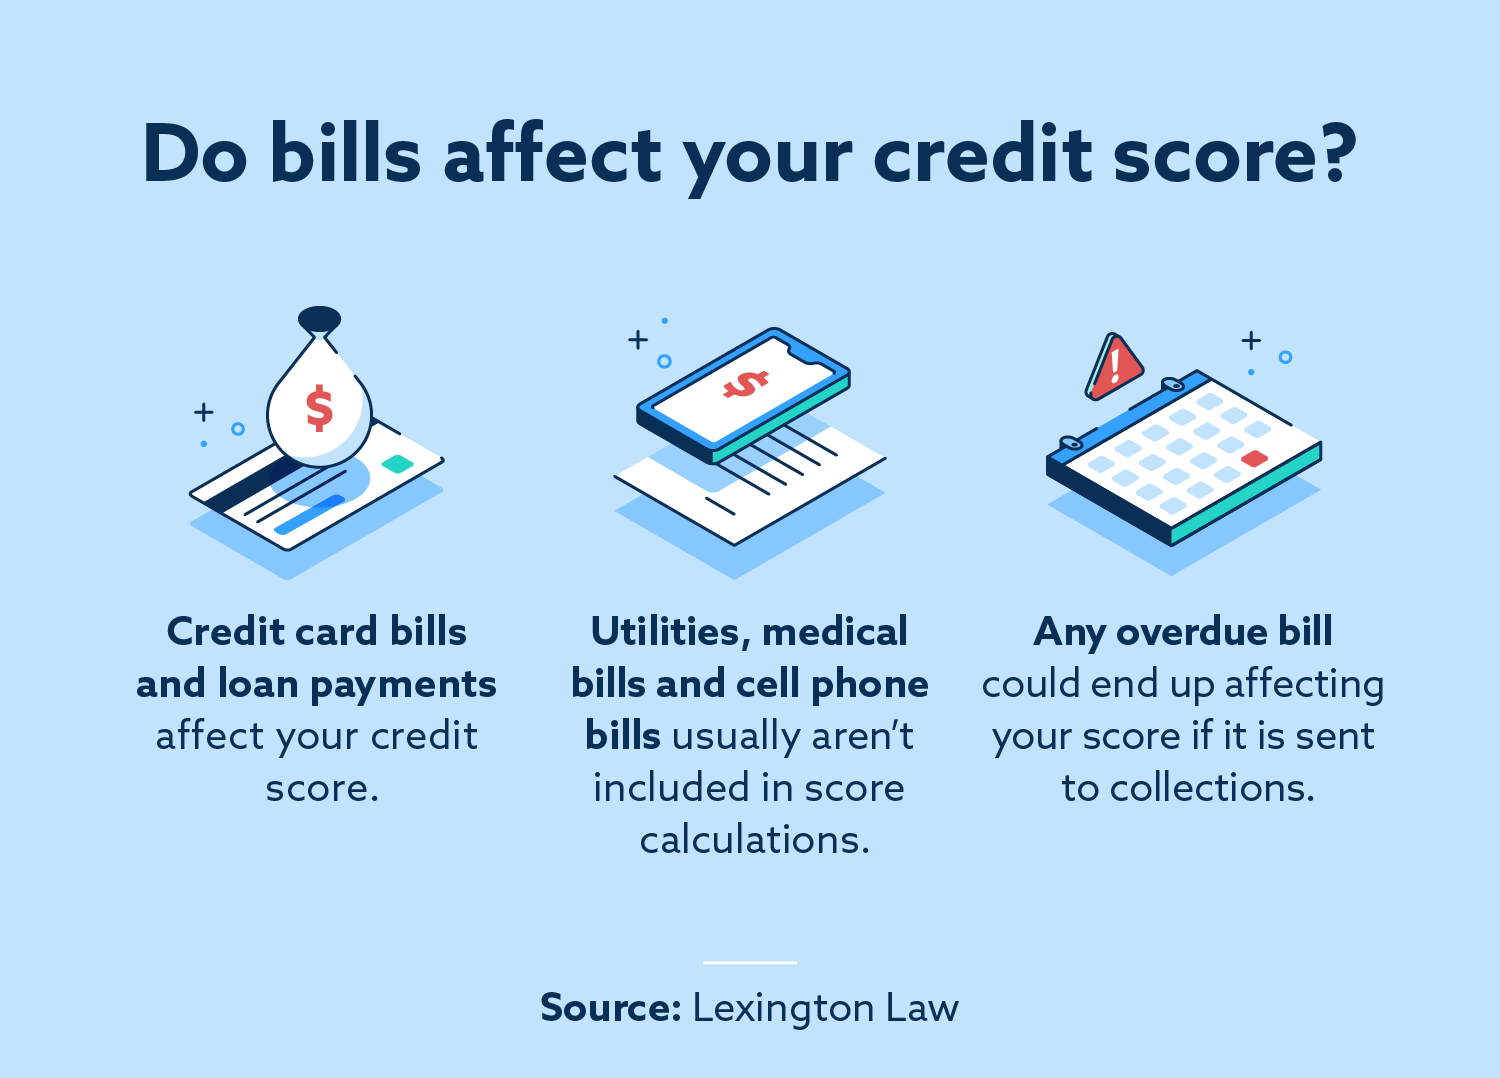 ¿Qué facturas afectan su puntaje de crédito?